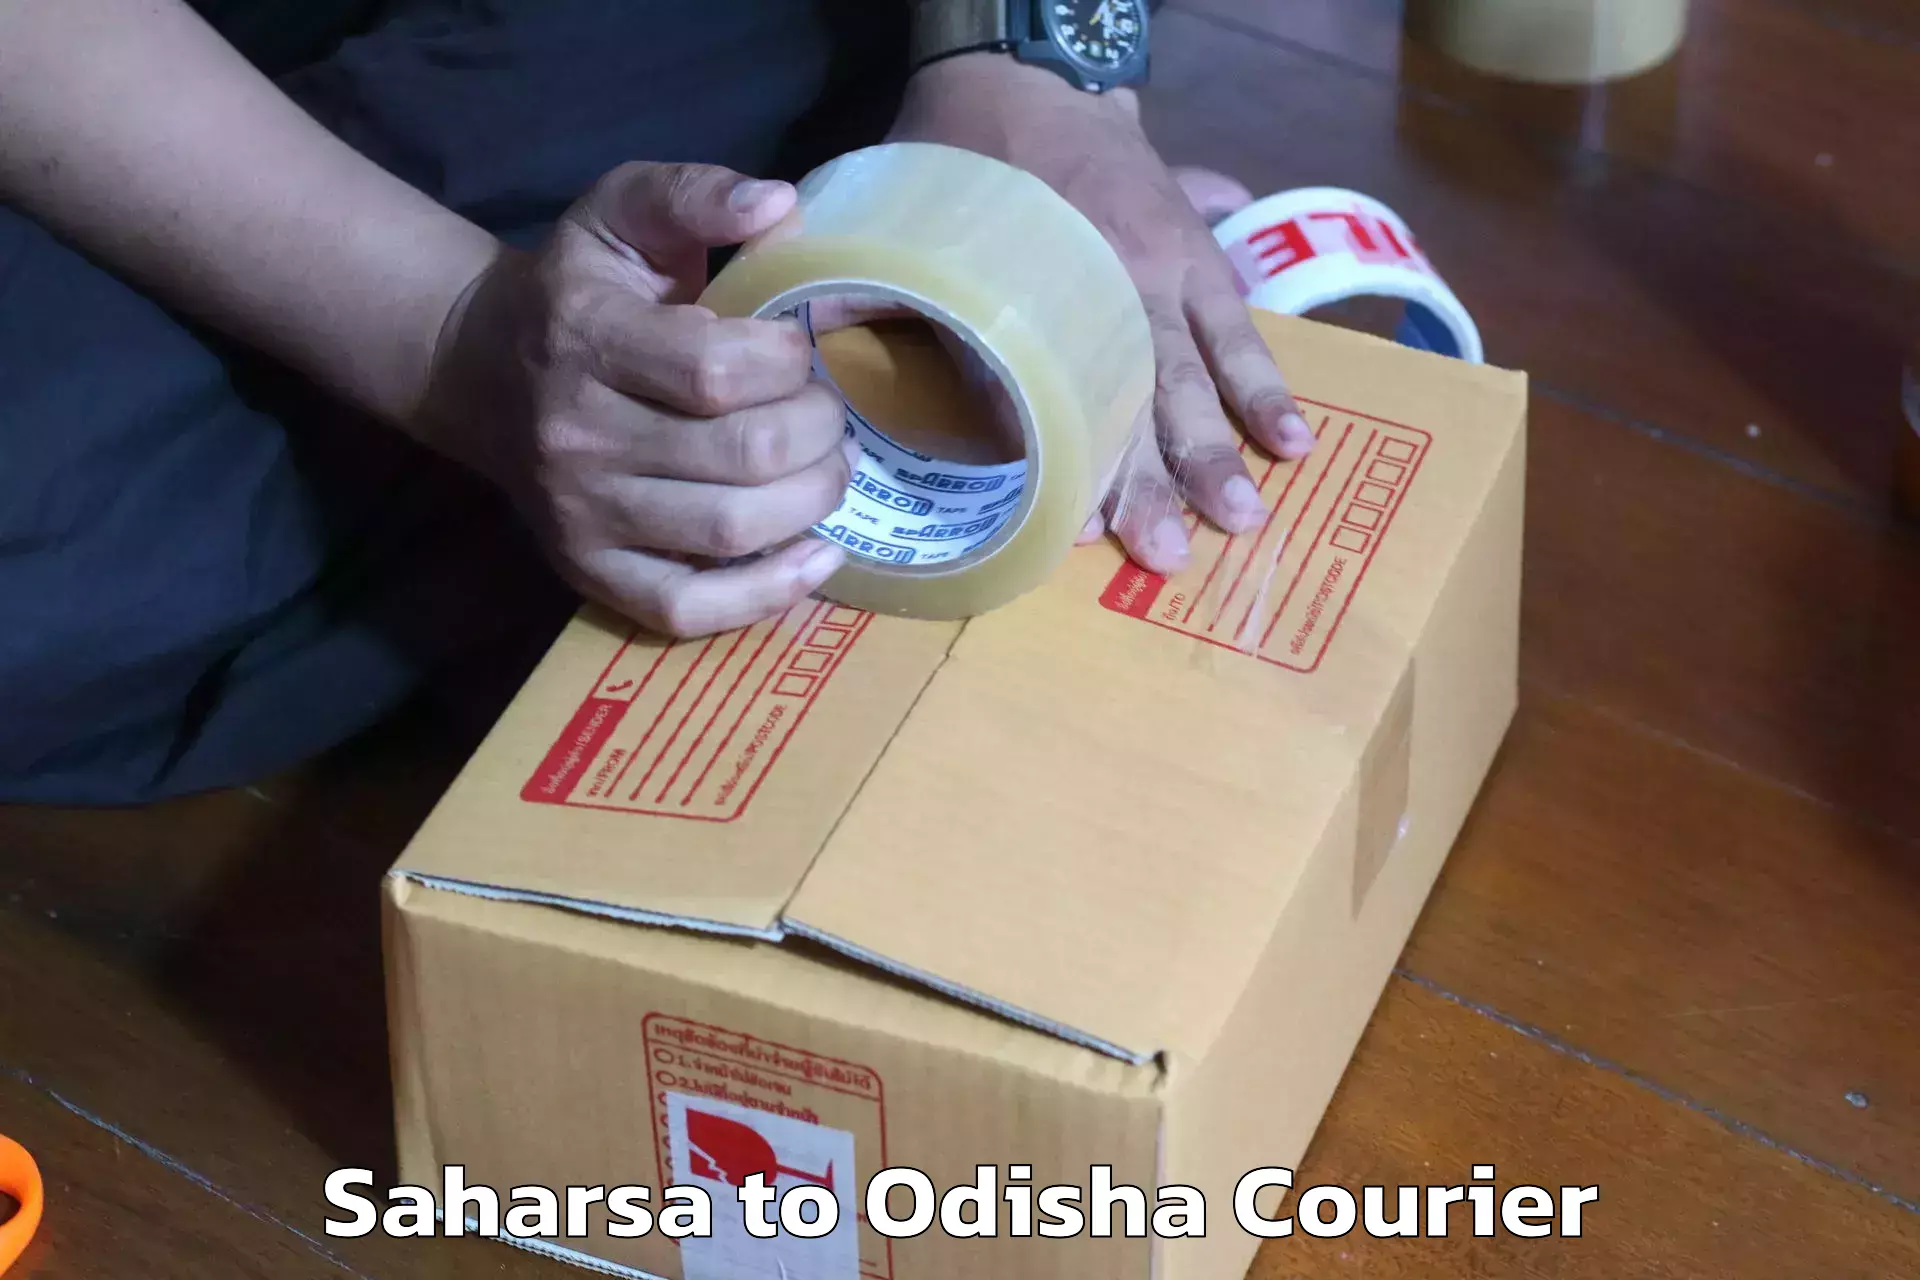 Furniture transport experts Saharsa to Ghatgaon